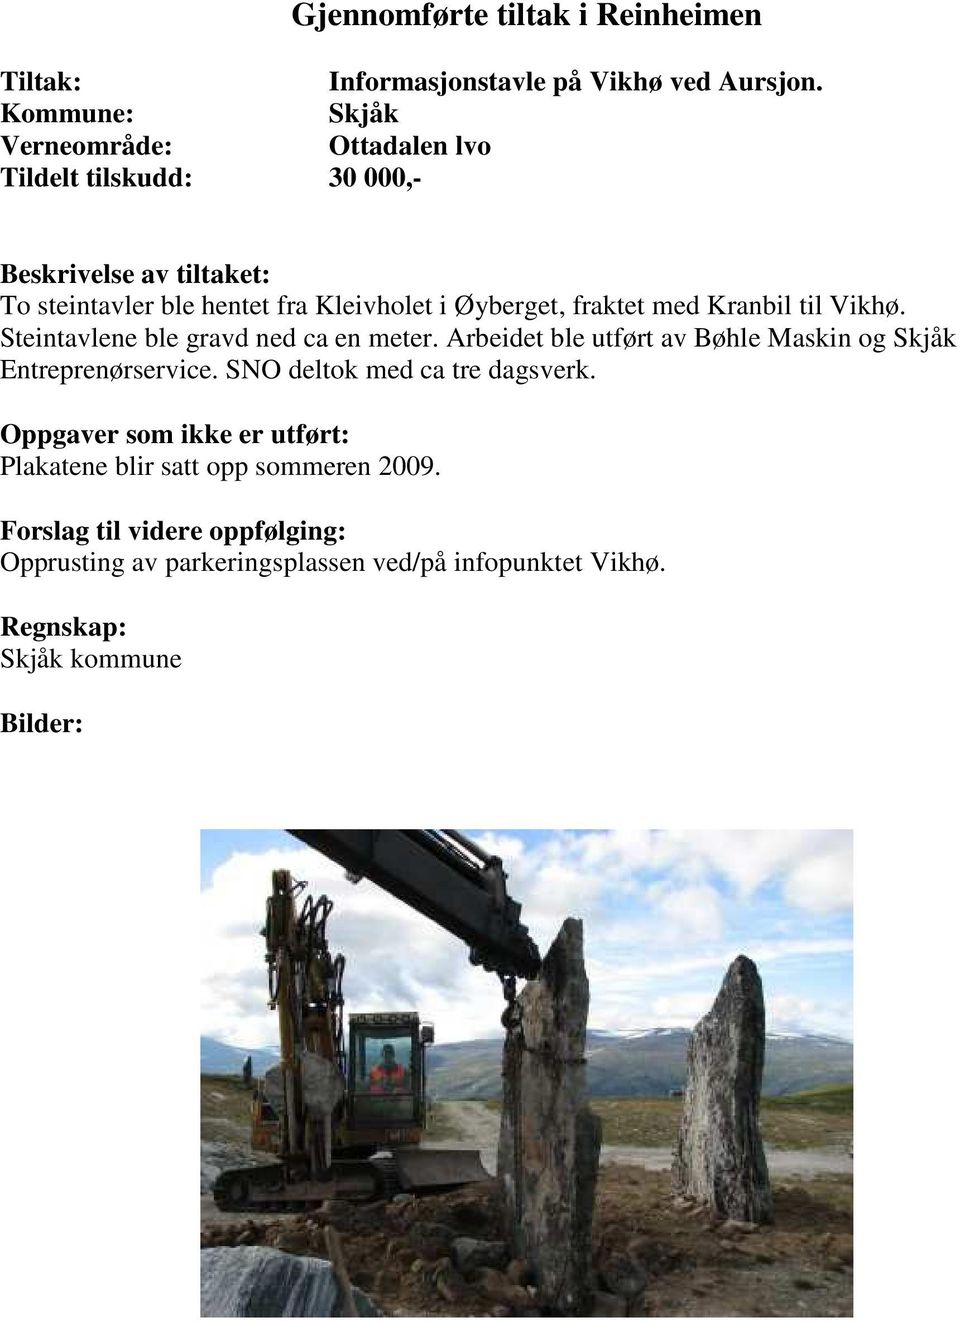 Øyberget, fraktet med Kranbil til Vikhø. Steintavlene ble gravd ned ca en meter. Arbeidet ble utført av Bøhle Maskin og Skjåk Entreprenørservice.